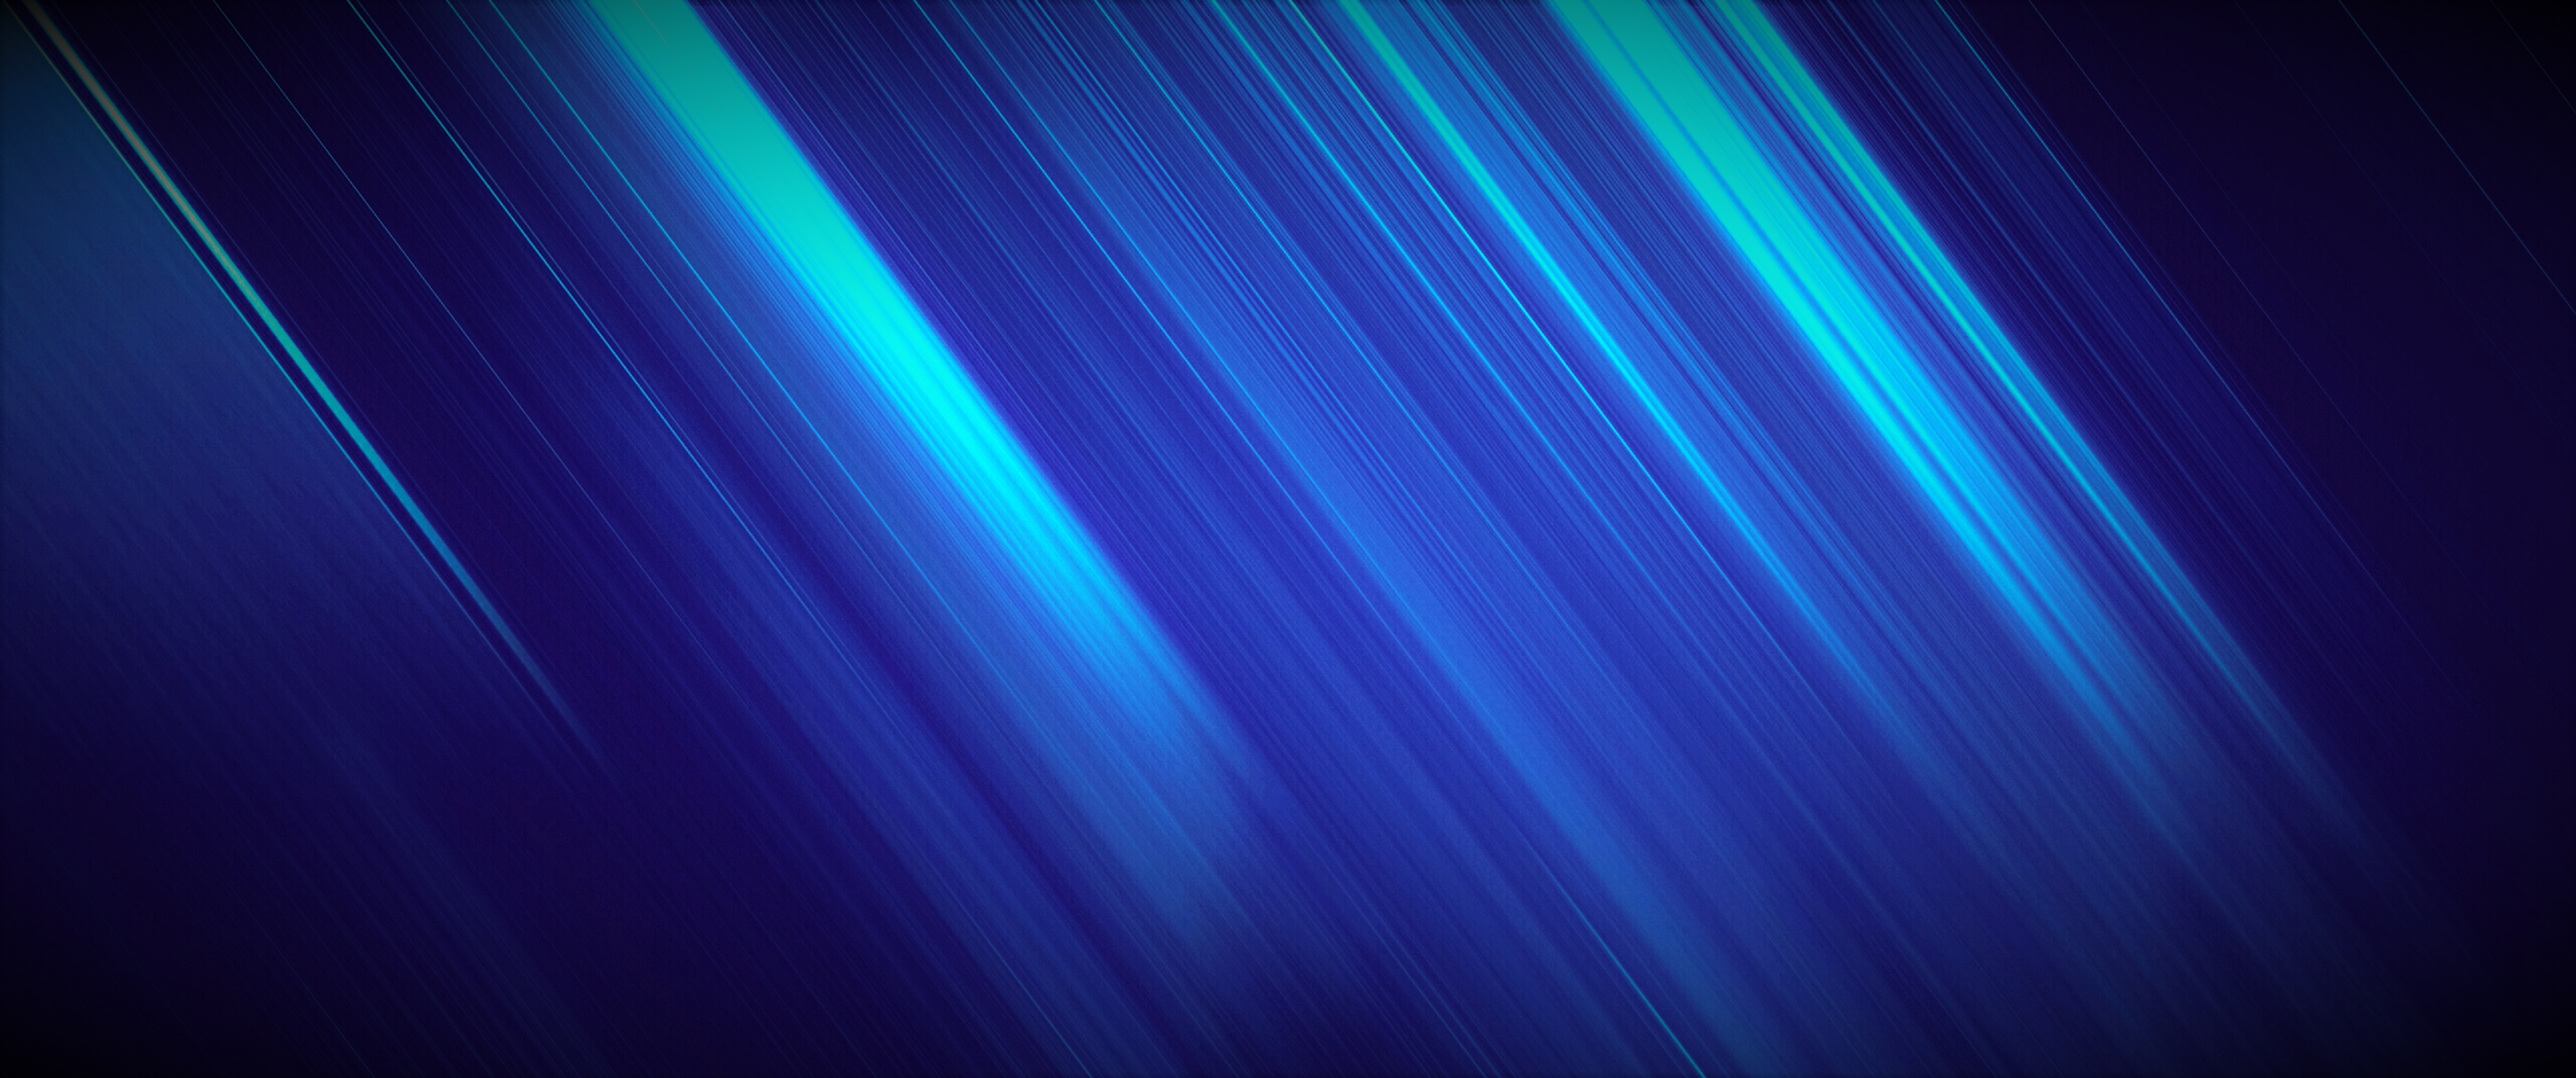 tapete 1336x768,blau,grün,licht,elektrisches blau,türkis